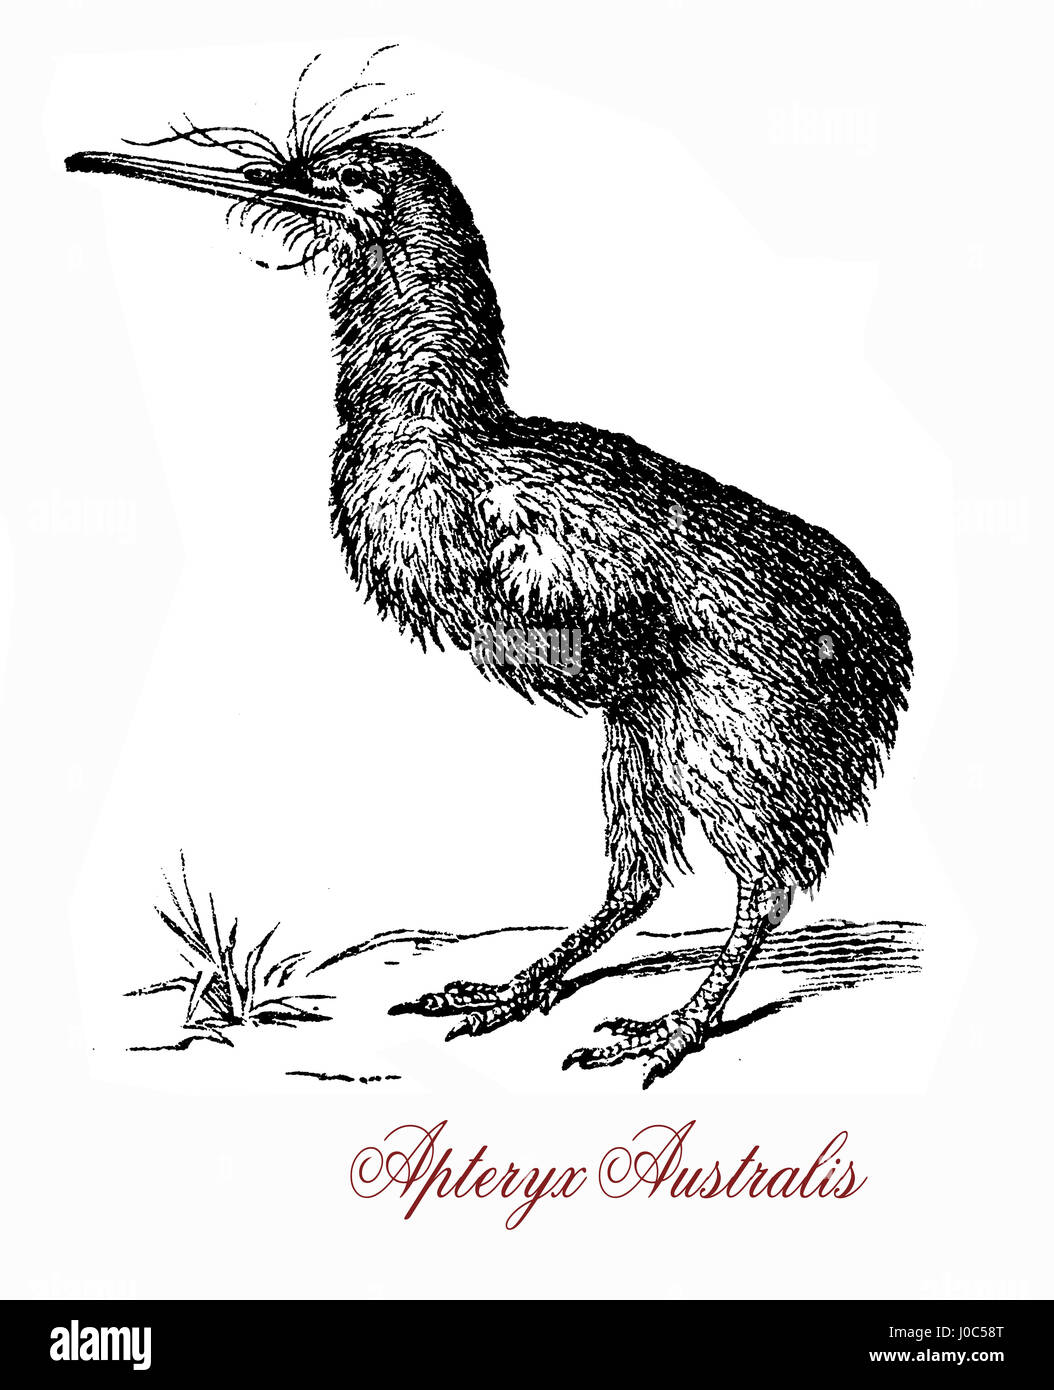 Le sud brown kiwi, ou tokoeka (Apteryx australis), se trouve dans l'île Sud de la Nouvelle-Zélande. Le nom d'origine grecque signifie "sans ailes". Banque D'Images